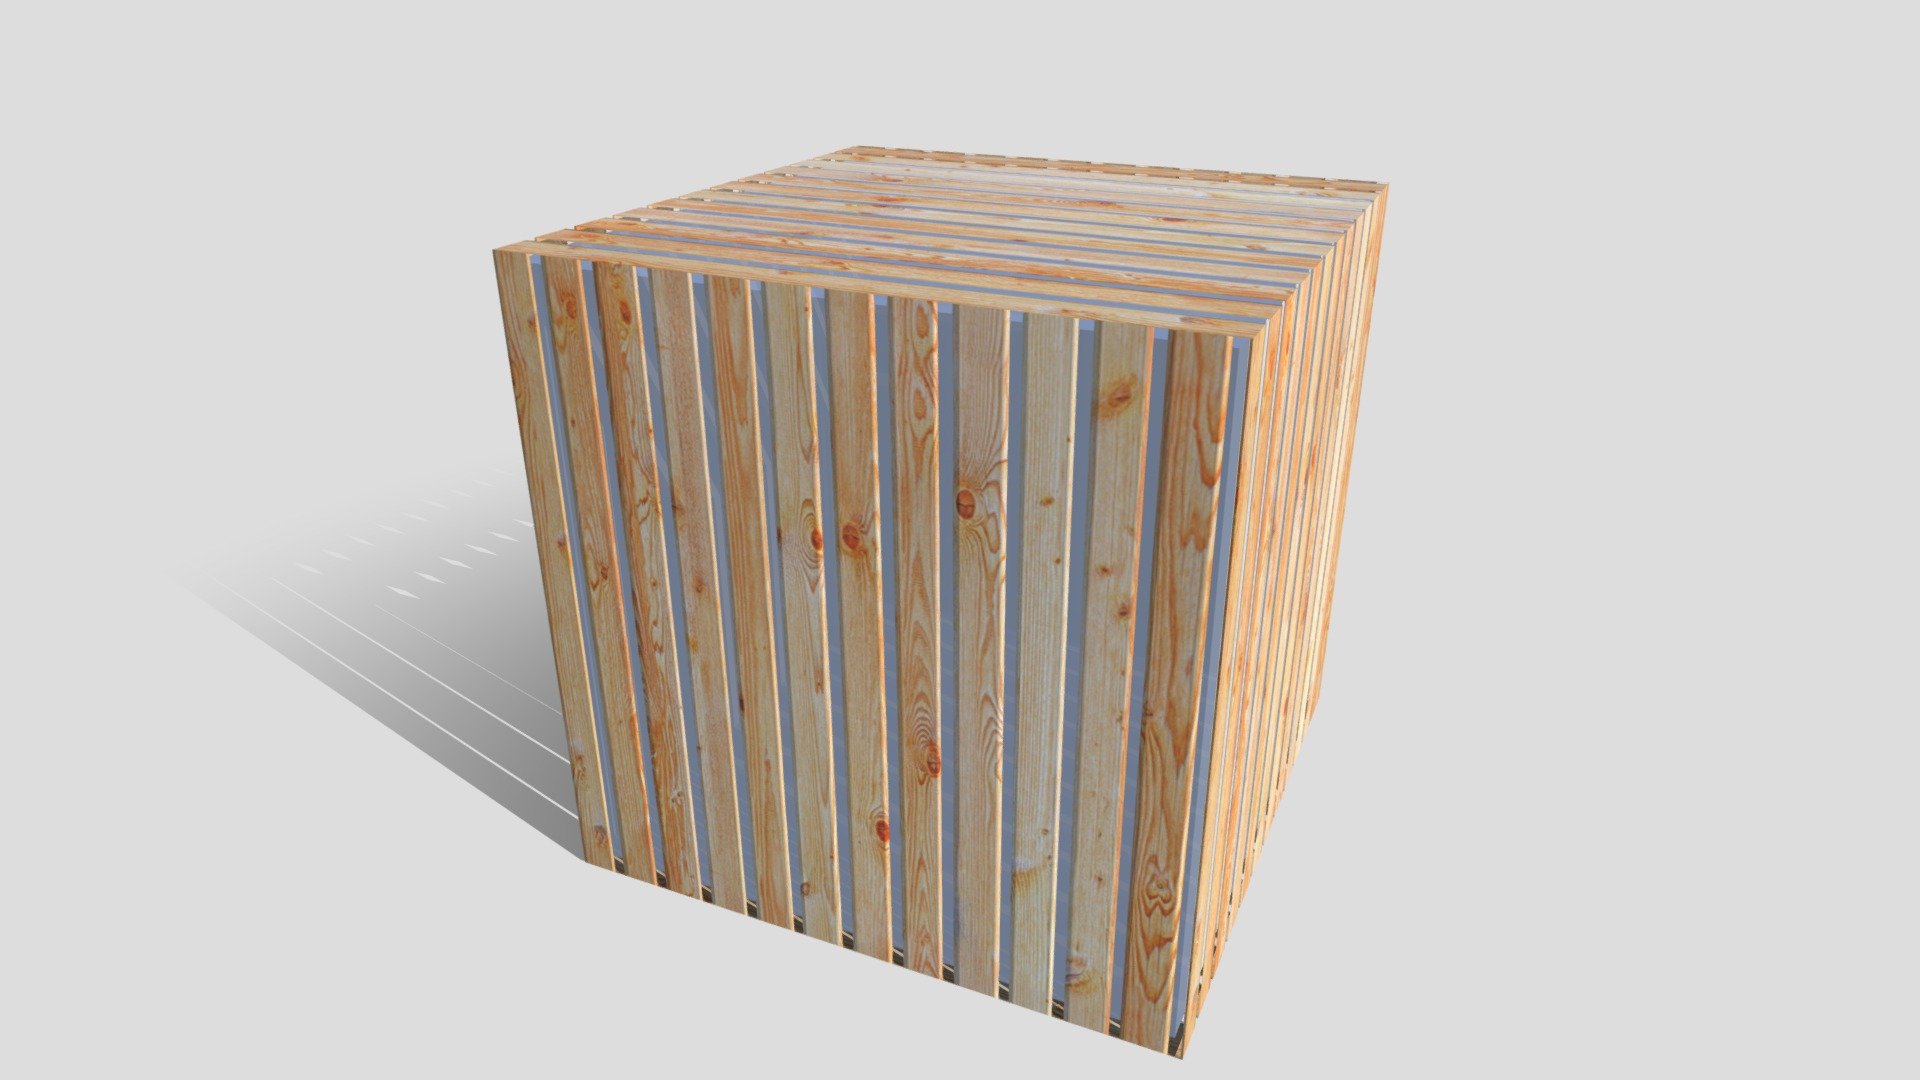 wood decking texture batten
Please like model if you download it - wood decking batten like model if you download - Download Free 3D model by VRA (@architect47) 3d model